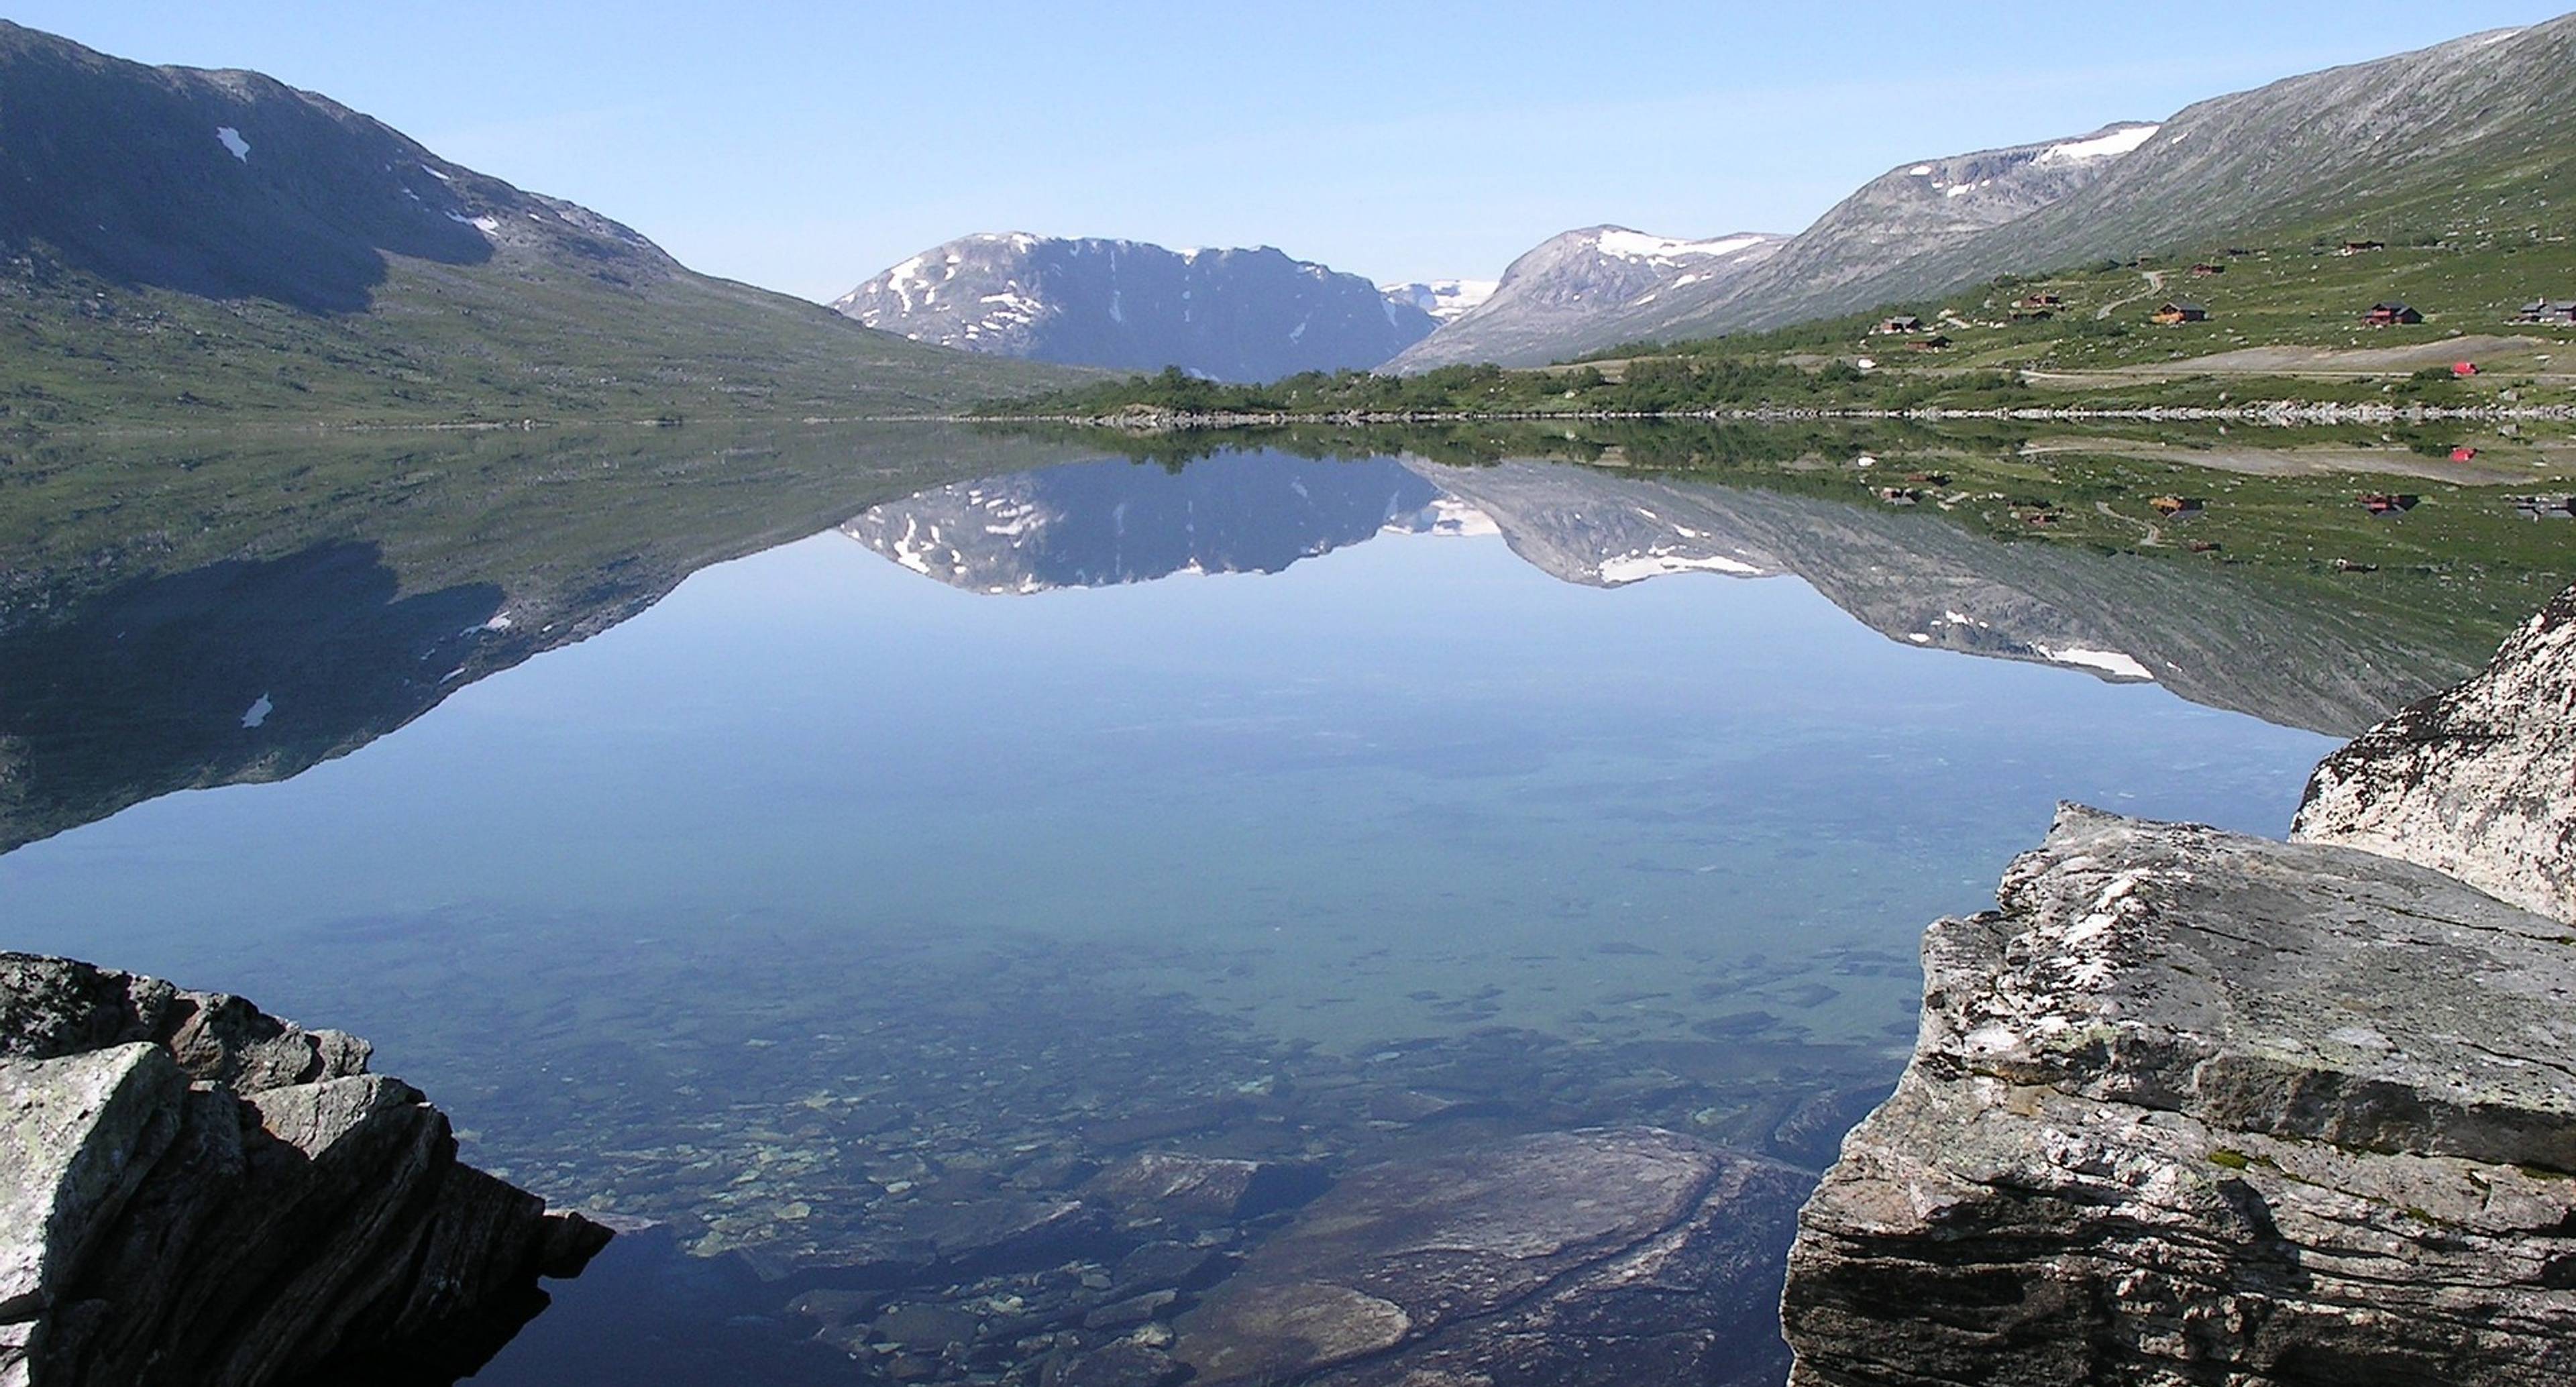 Histoire et nature se conjuguent dans ce voyage à travers les vallées de Norvège